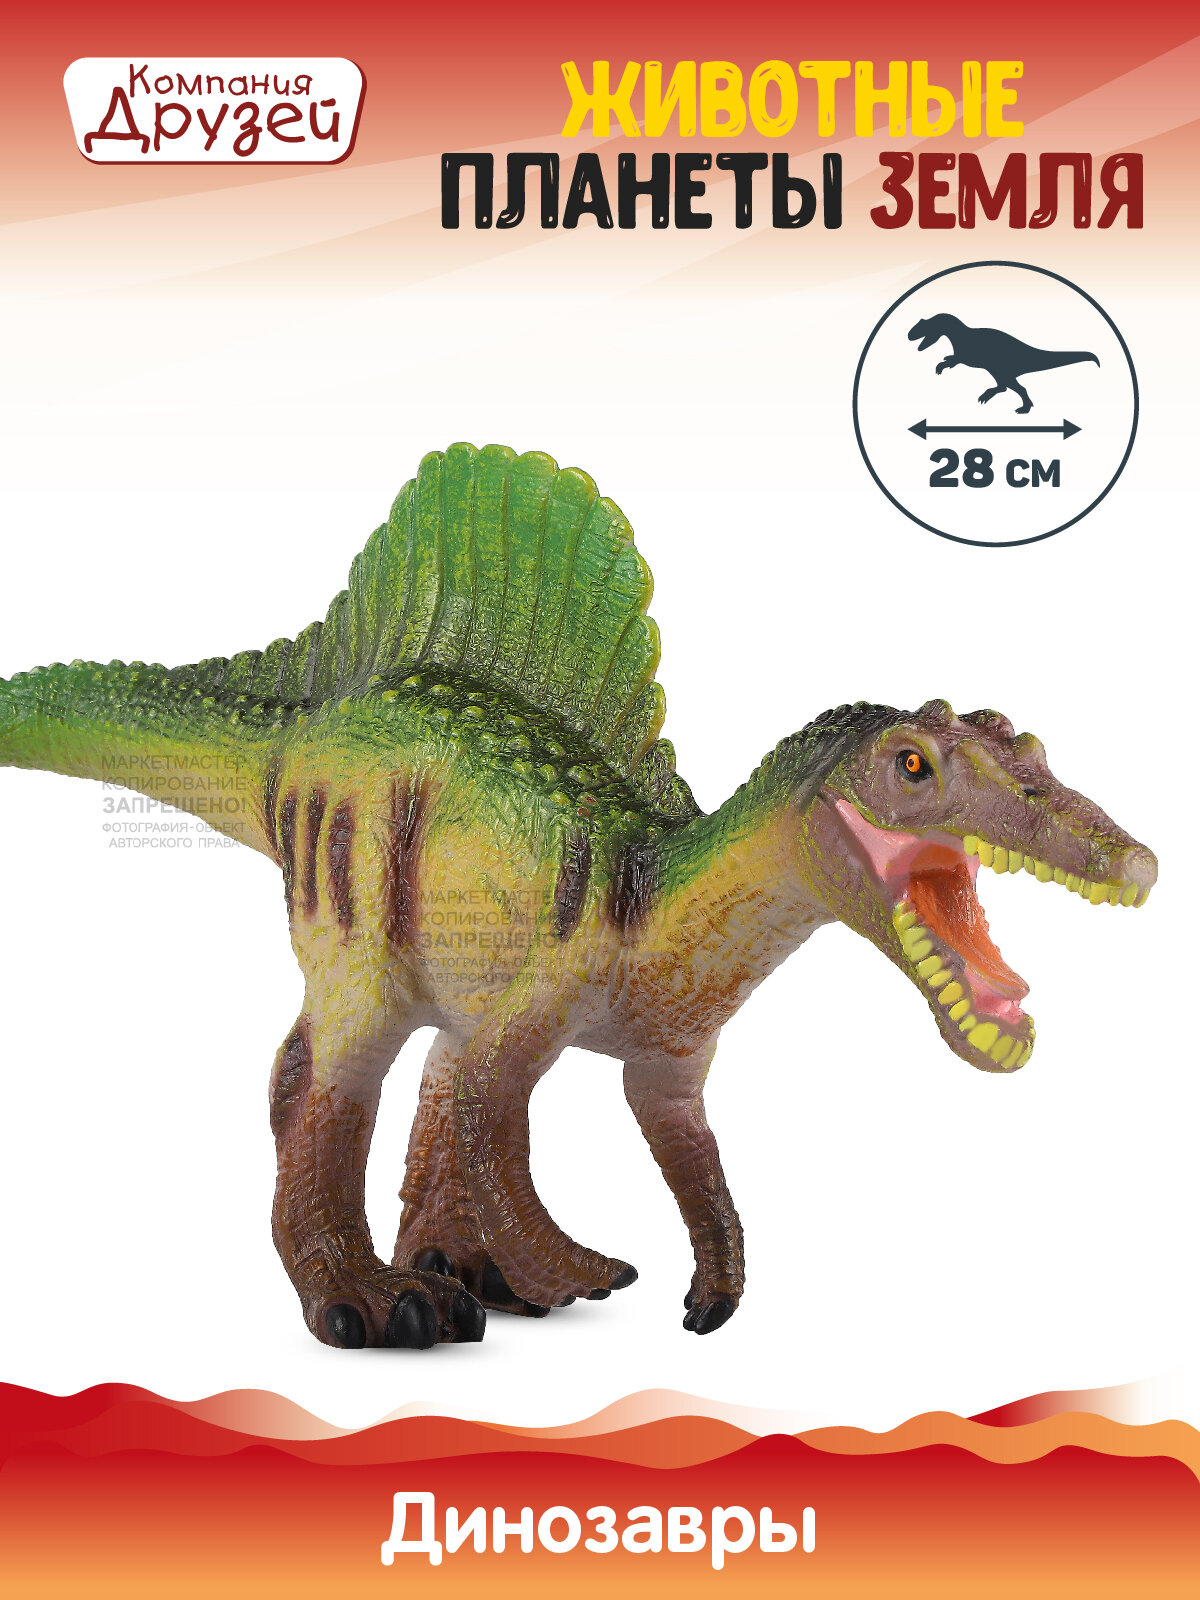 Игрушка для детей Динозавр ТМ компания друзей, серия Животные планеты Земля, игрушечное доисторическое животное, эластичный пластик, JB0208310